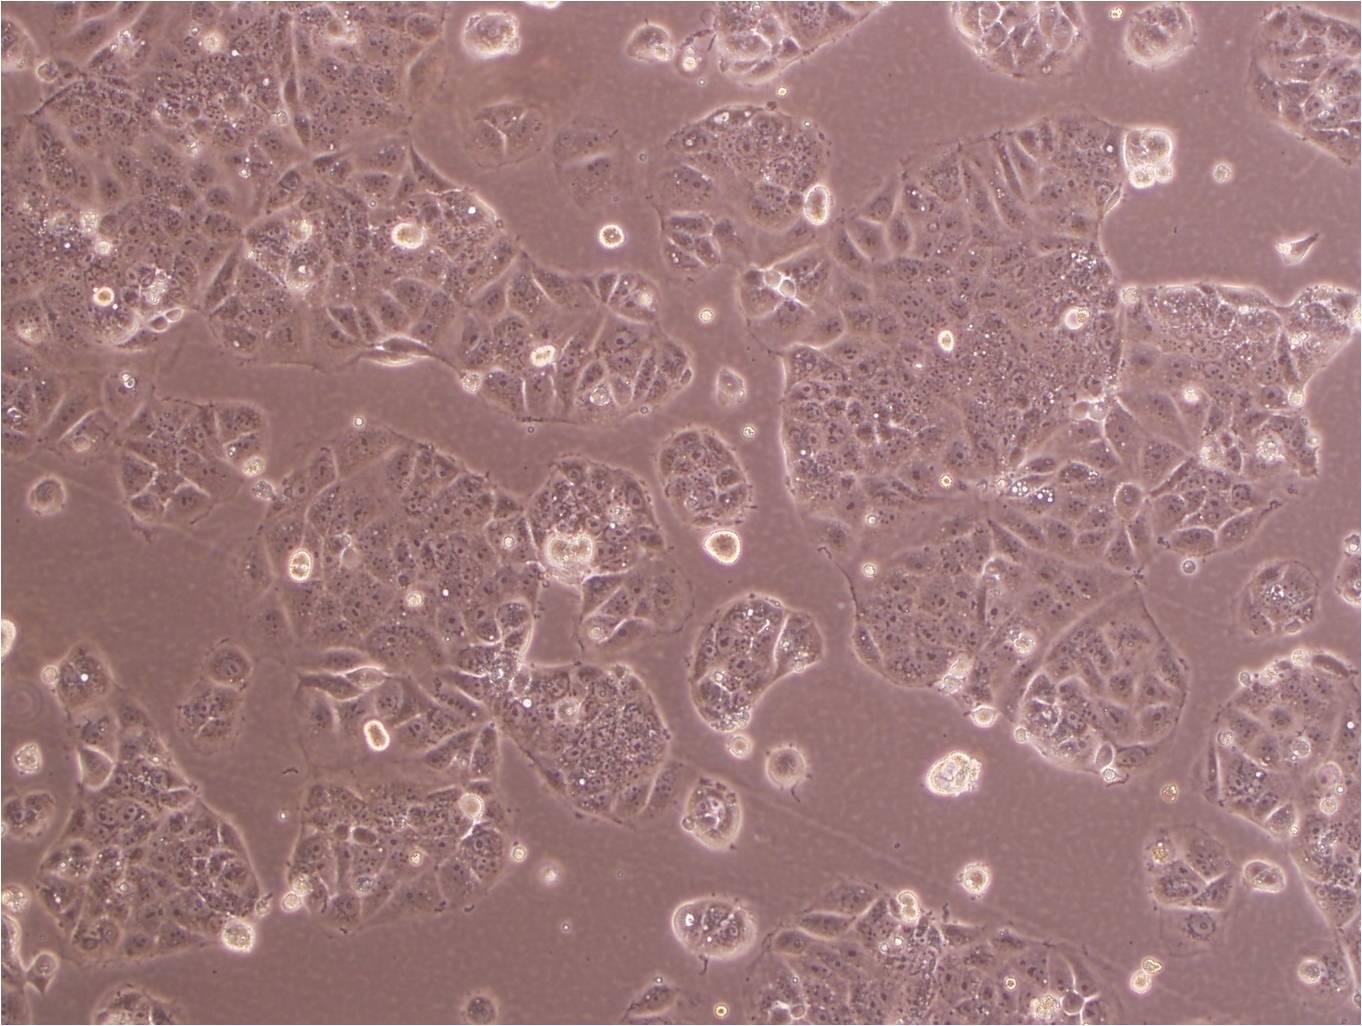 COLO 824 Cell:人乳腺癌细胞系